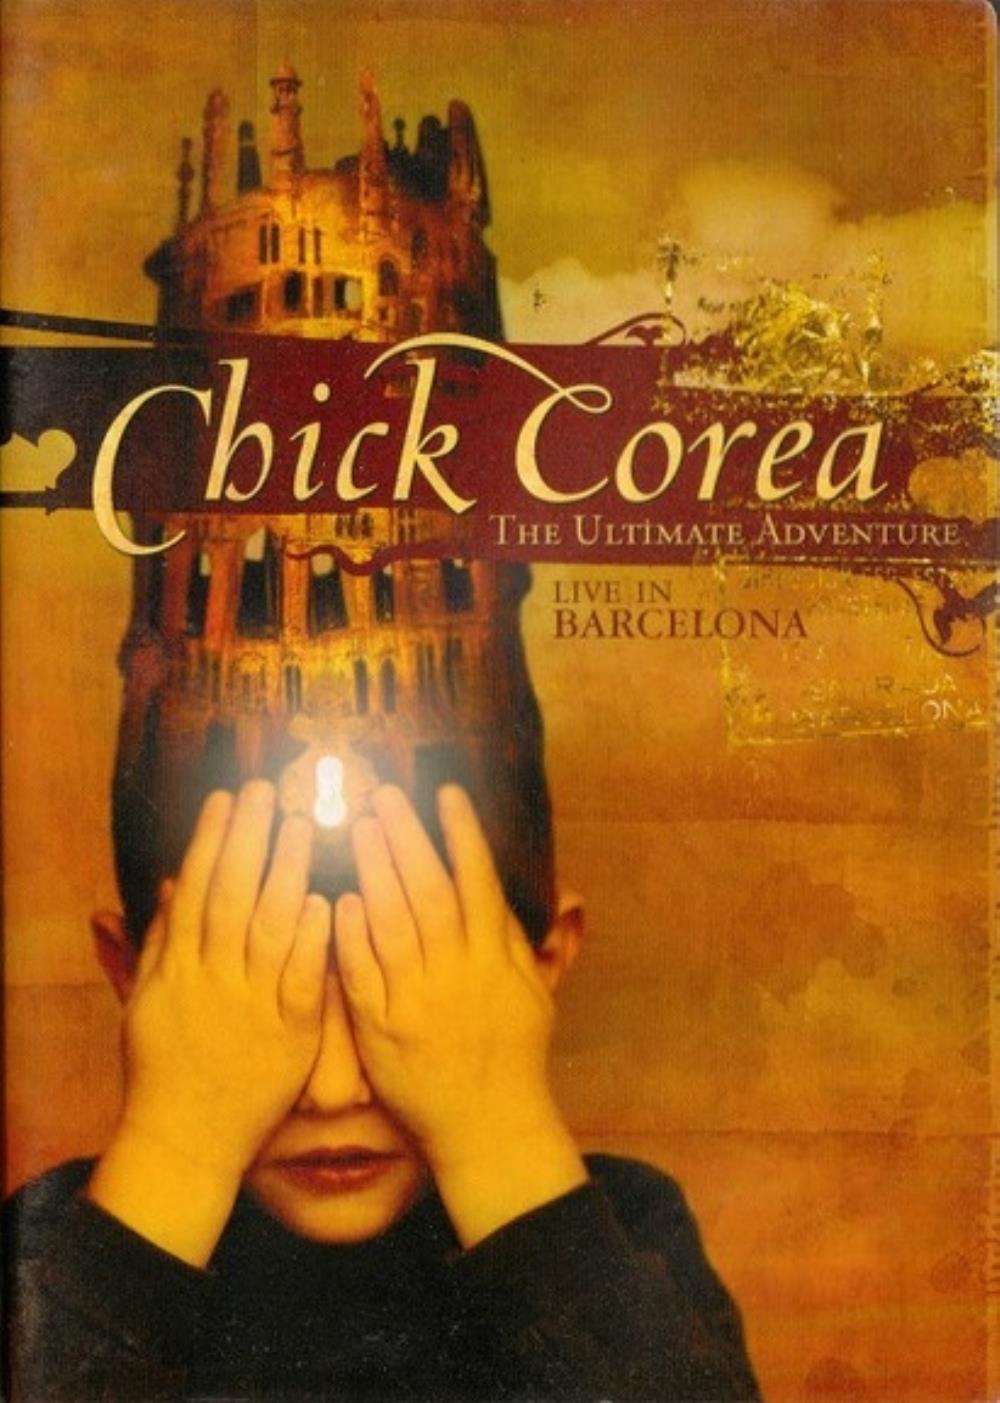 Chick Corea The Ultimate Adventure - Live in Barcelona album cover